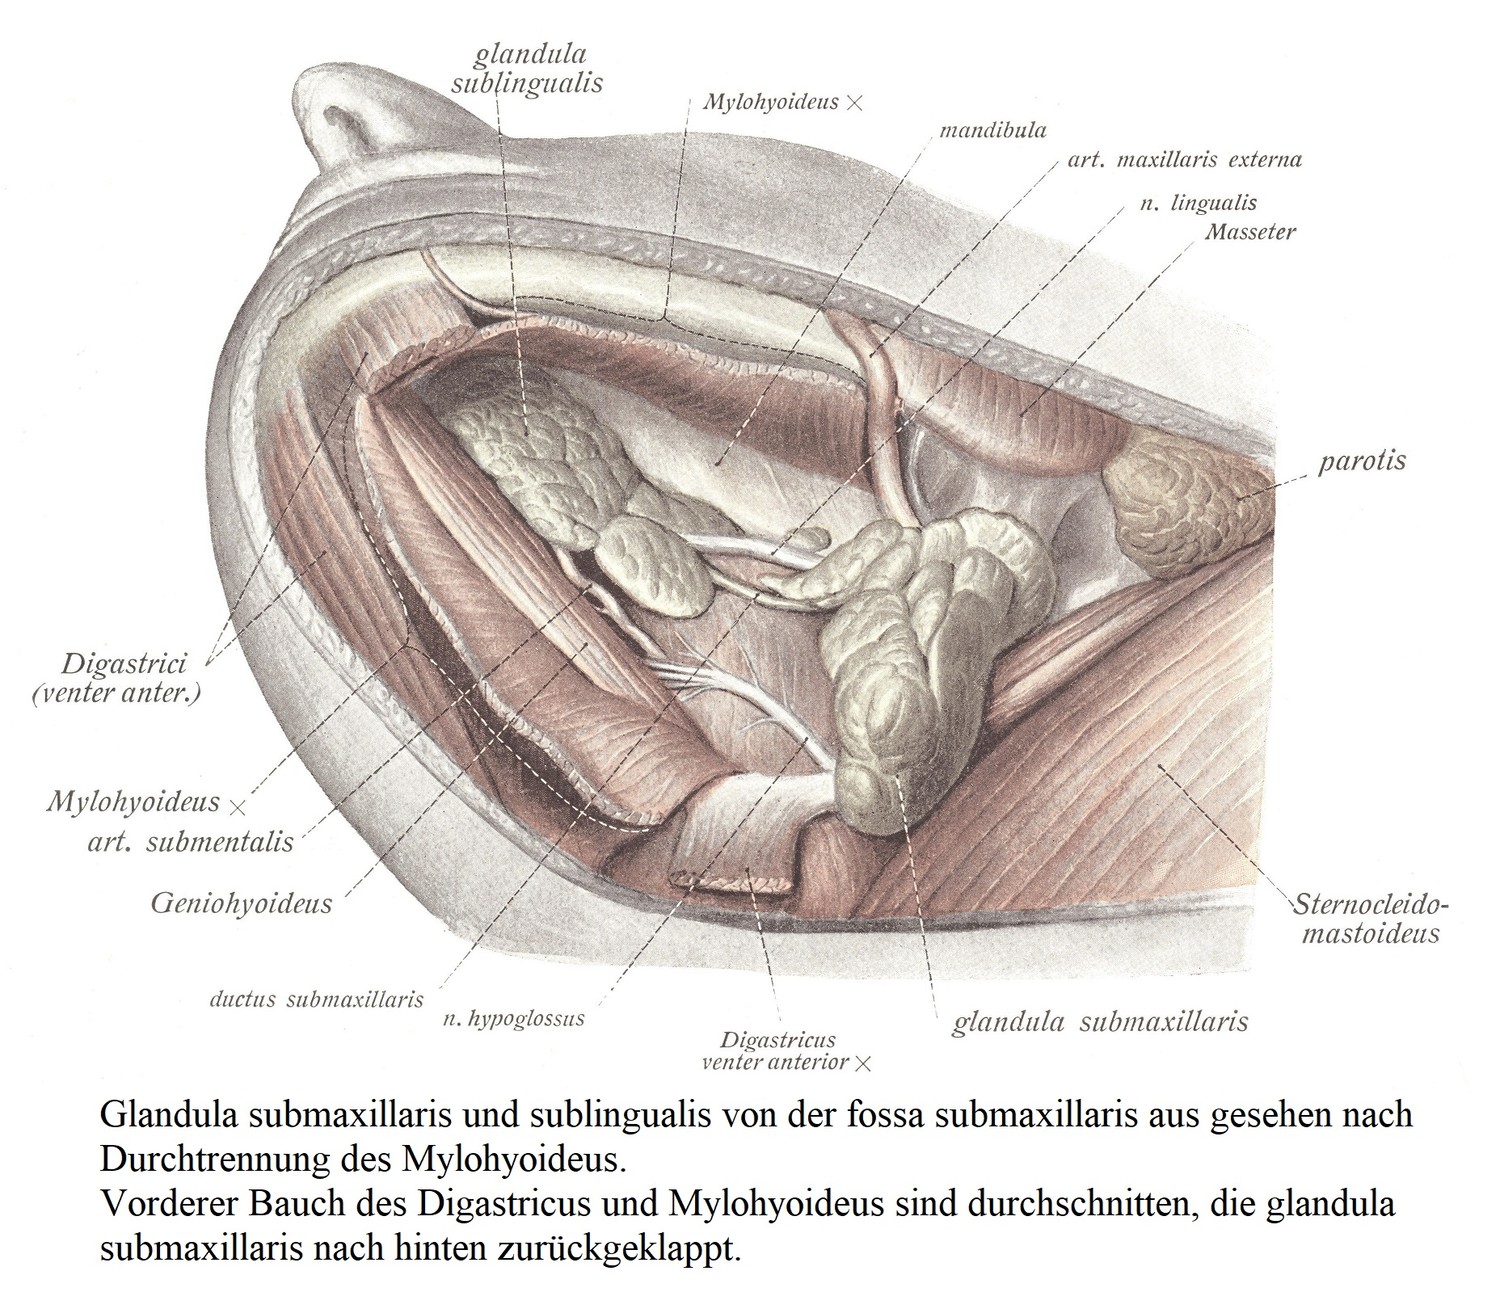 Вид подчелюстной и подъязычной желез из подчелюстной ямки после разделения челюстно-подъязычной кости. Переднее брюшко двубрюшной и подъязычной мышц разделено, подчелюстная железа загнута назад.